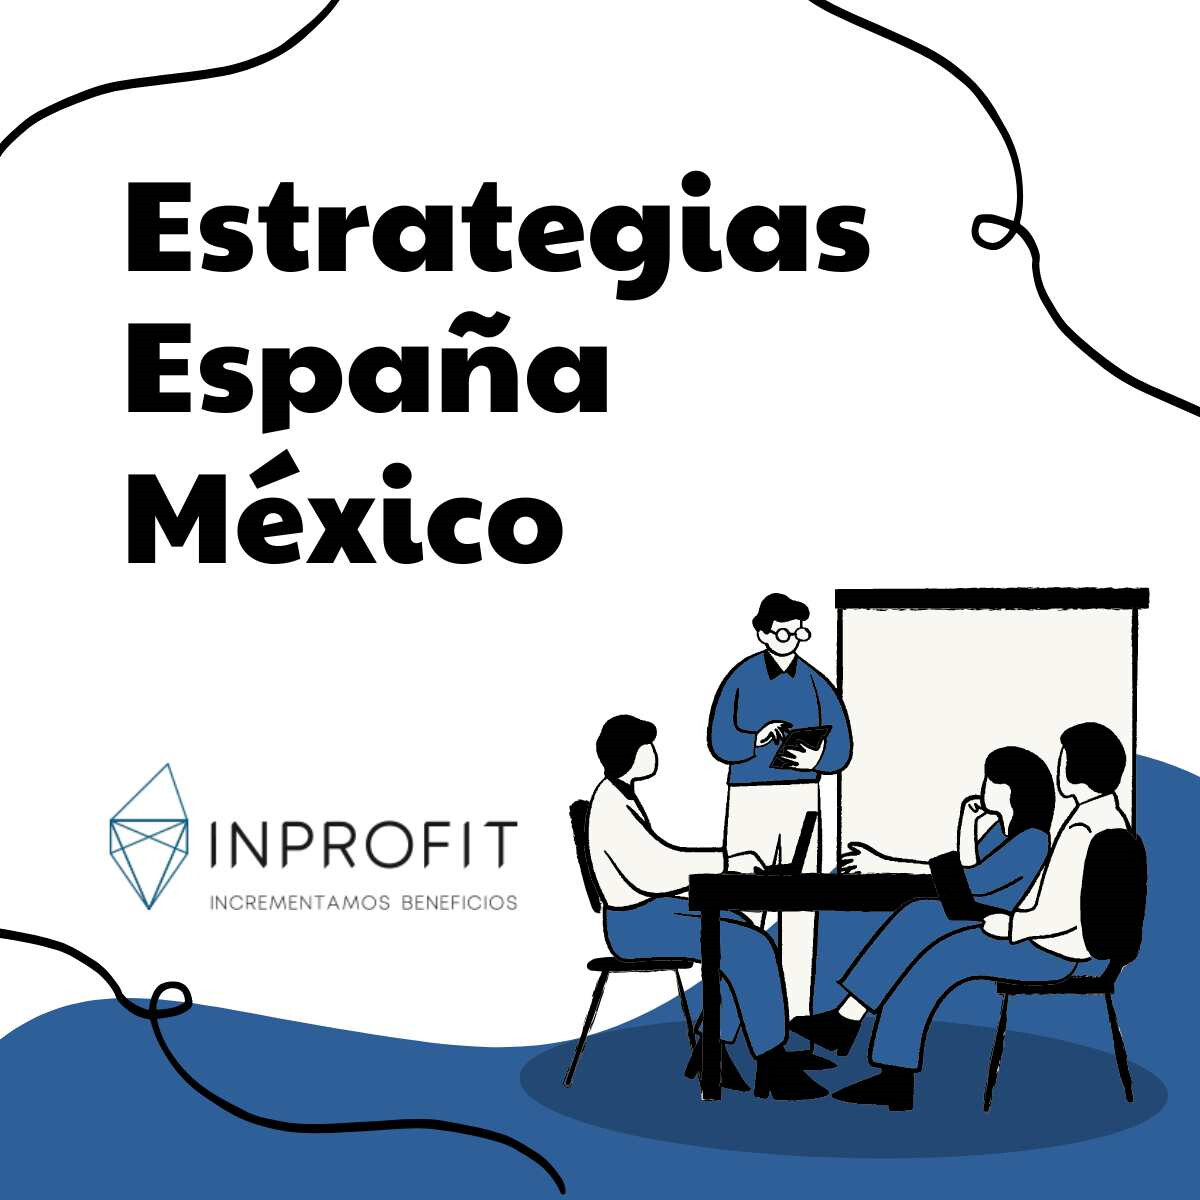 Estrategias empresariales innovadoras entre México y España